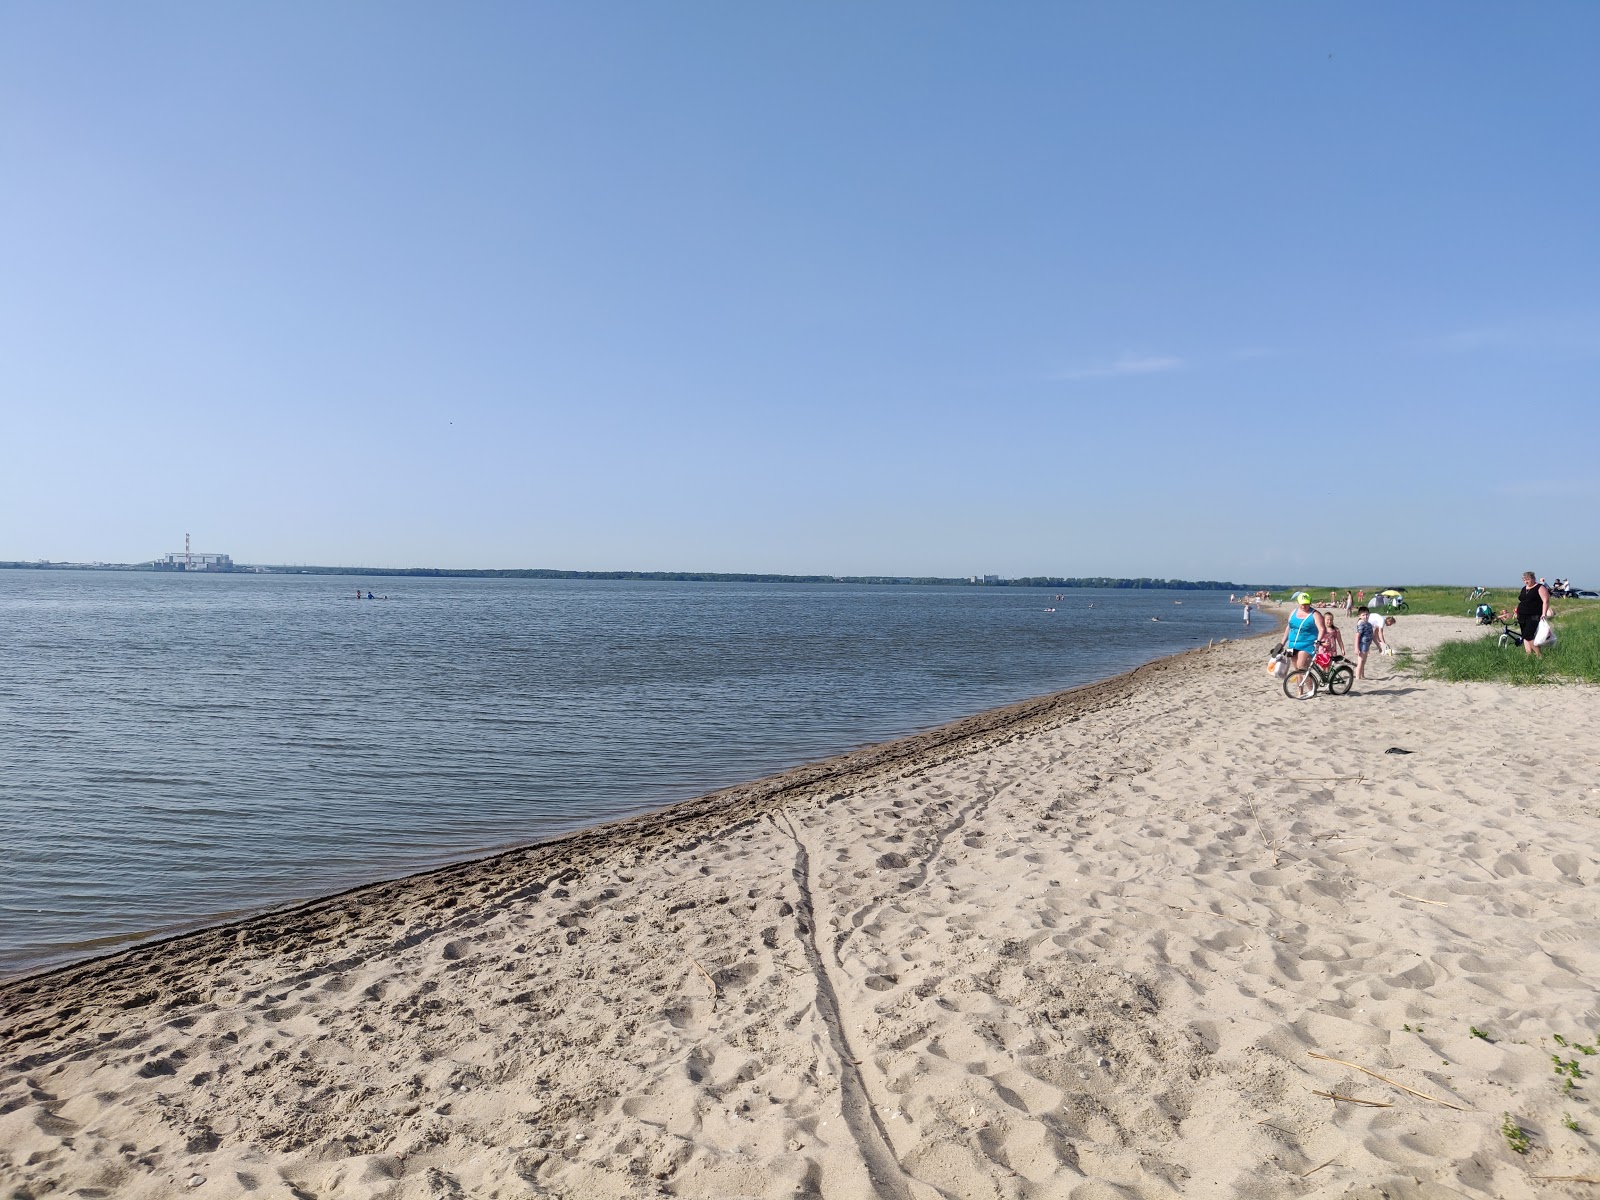 Fotografie cu Poberezh'ye beach cu o suprafață de nisip strălucitor